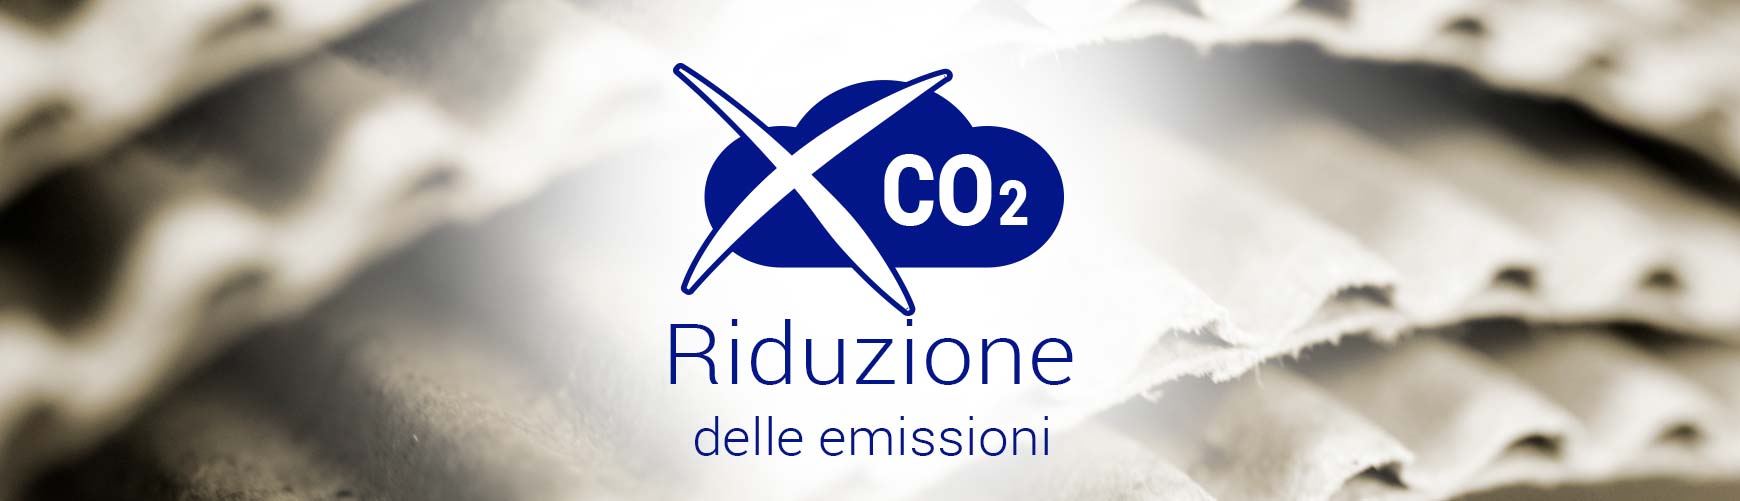 Riduzione CO2